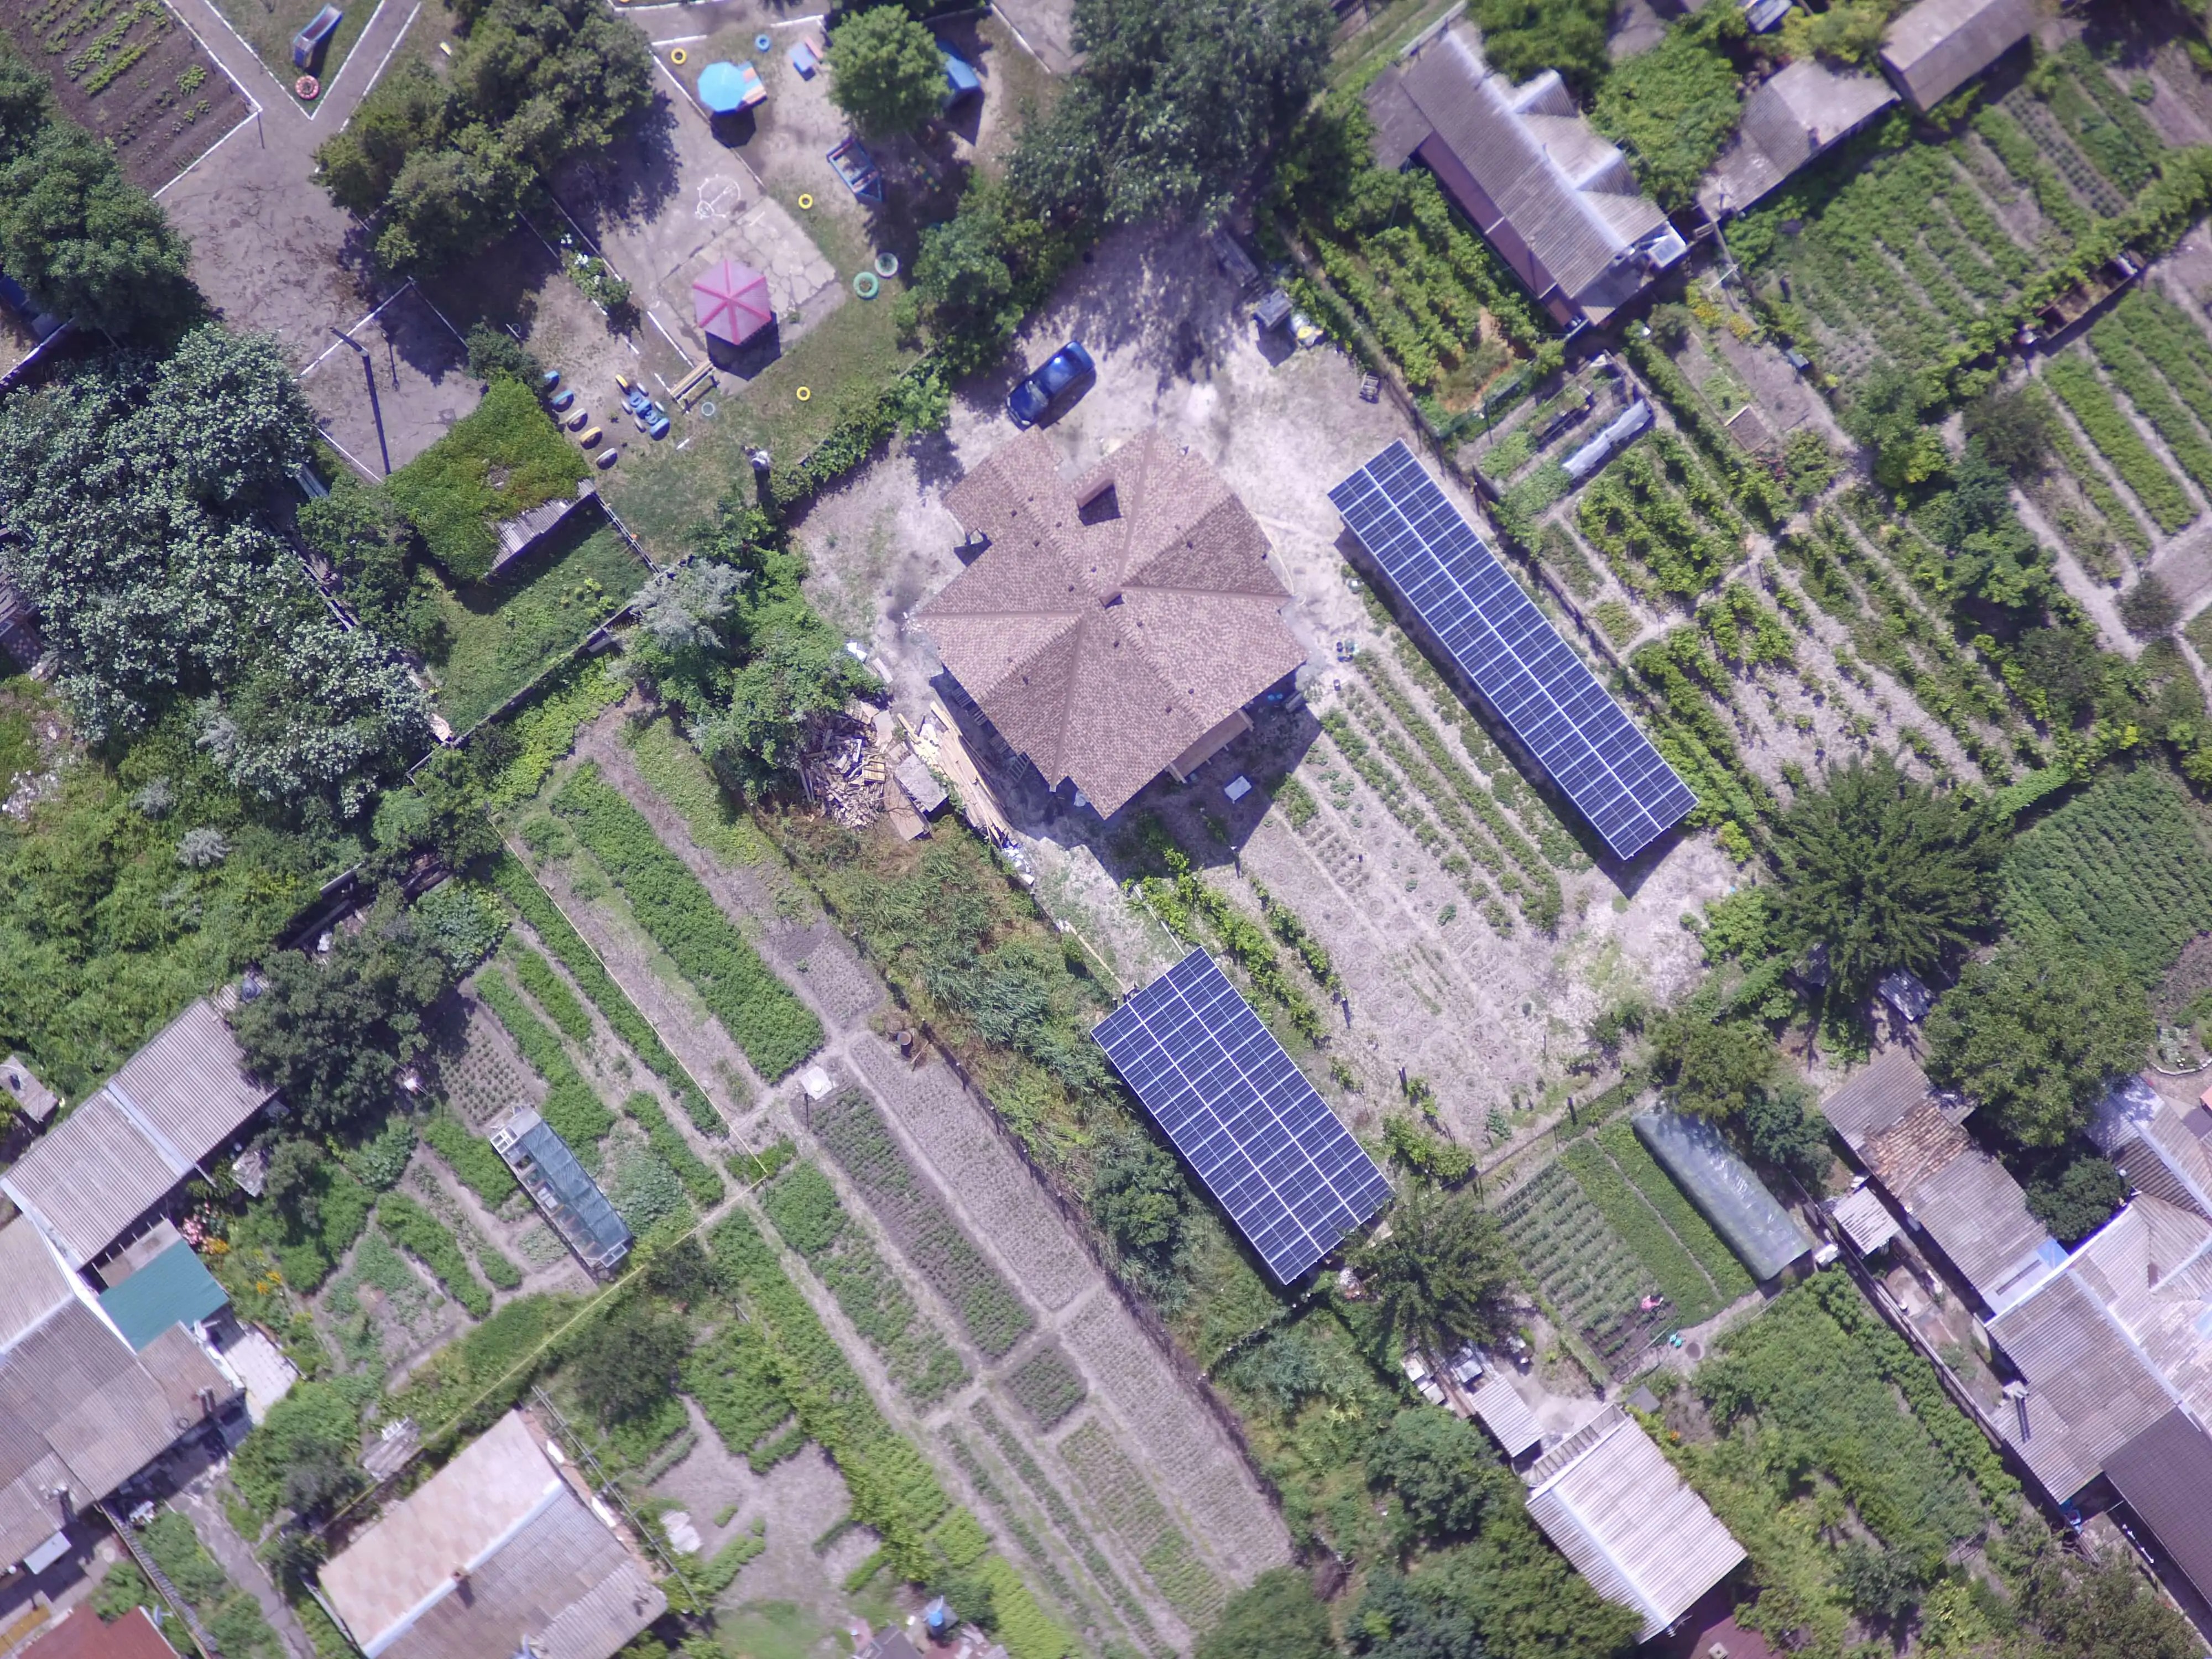 Солнечная станция 36 кВт Бердянск, Запорожская обл. (июнь 2021)